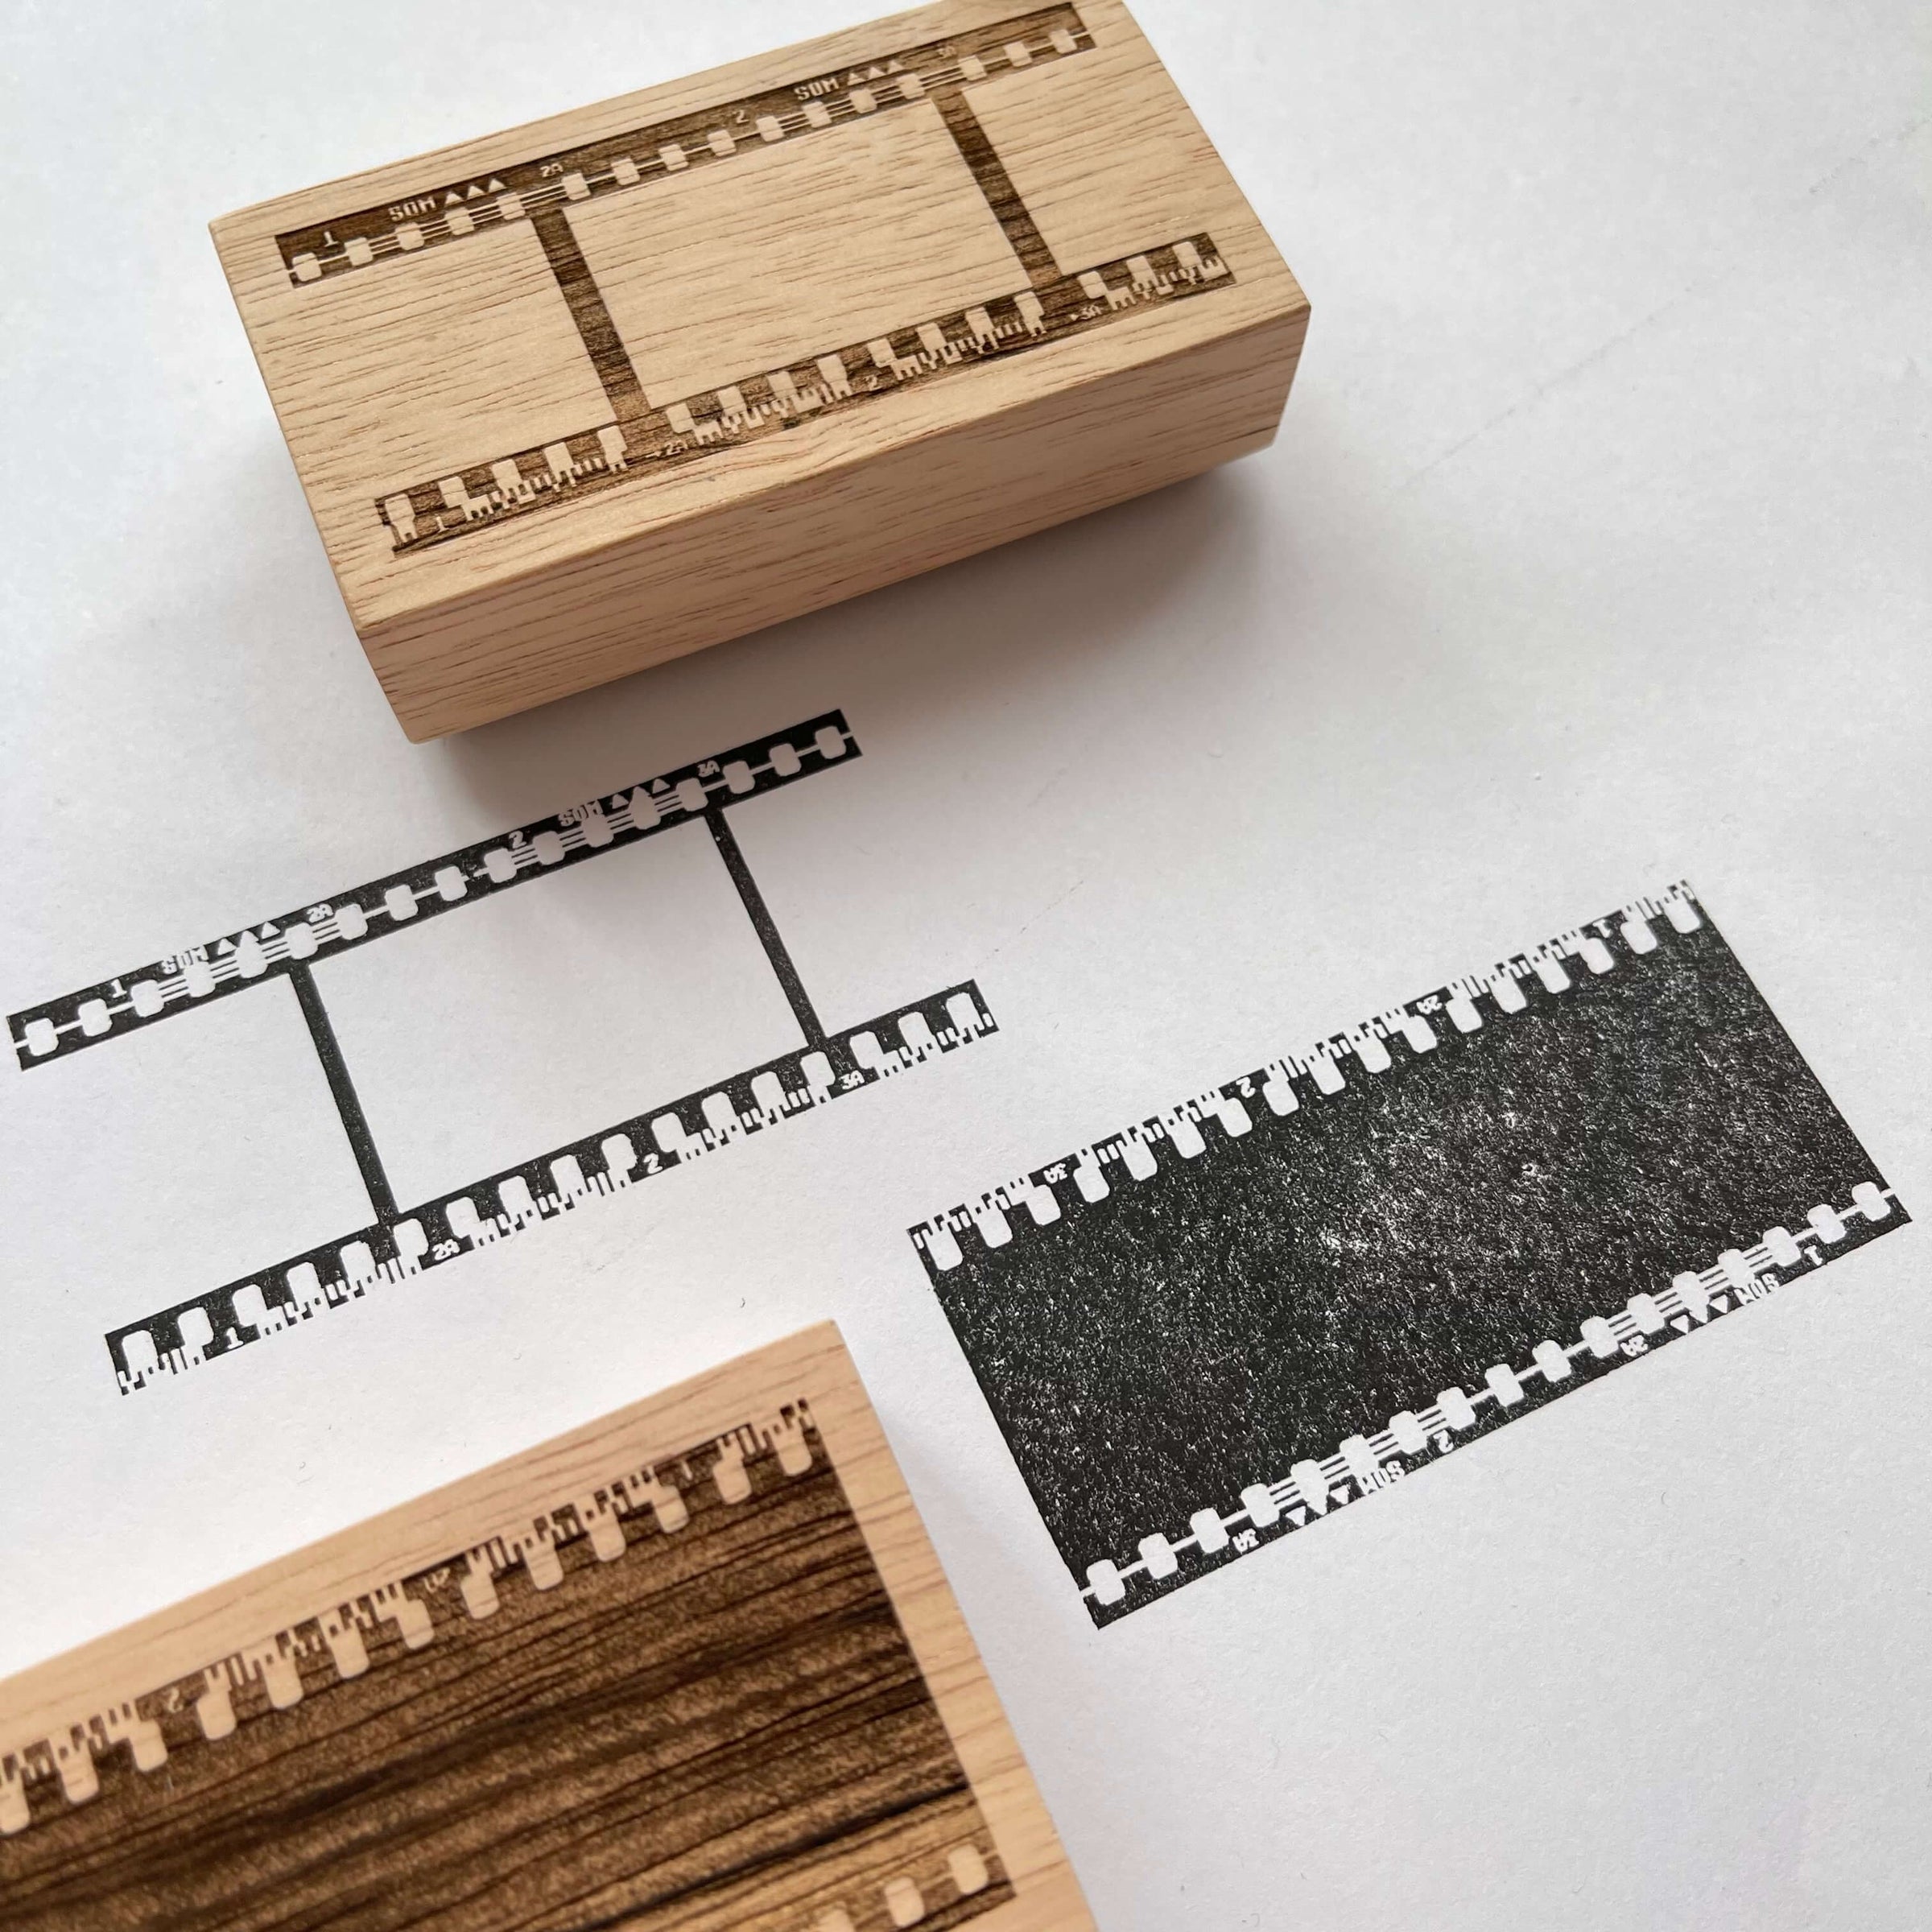 Film Stamps, Film Frame Stamps, Film Strip Frame Rubber Stamp